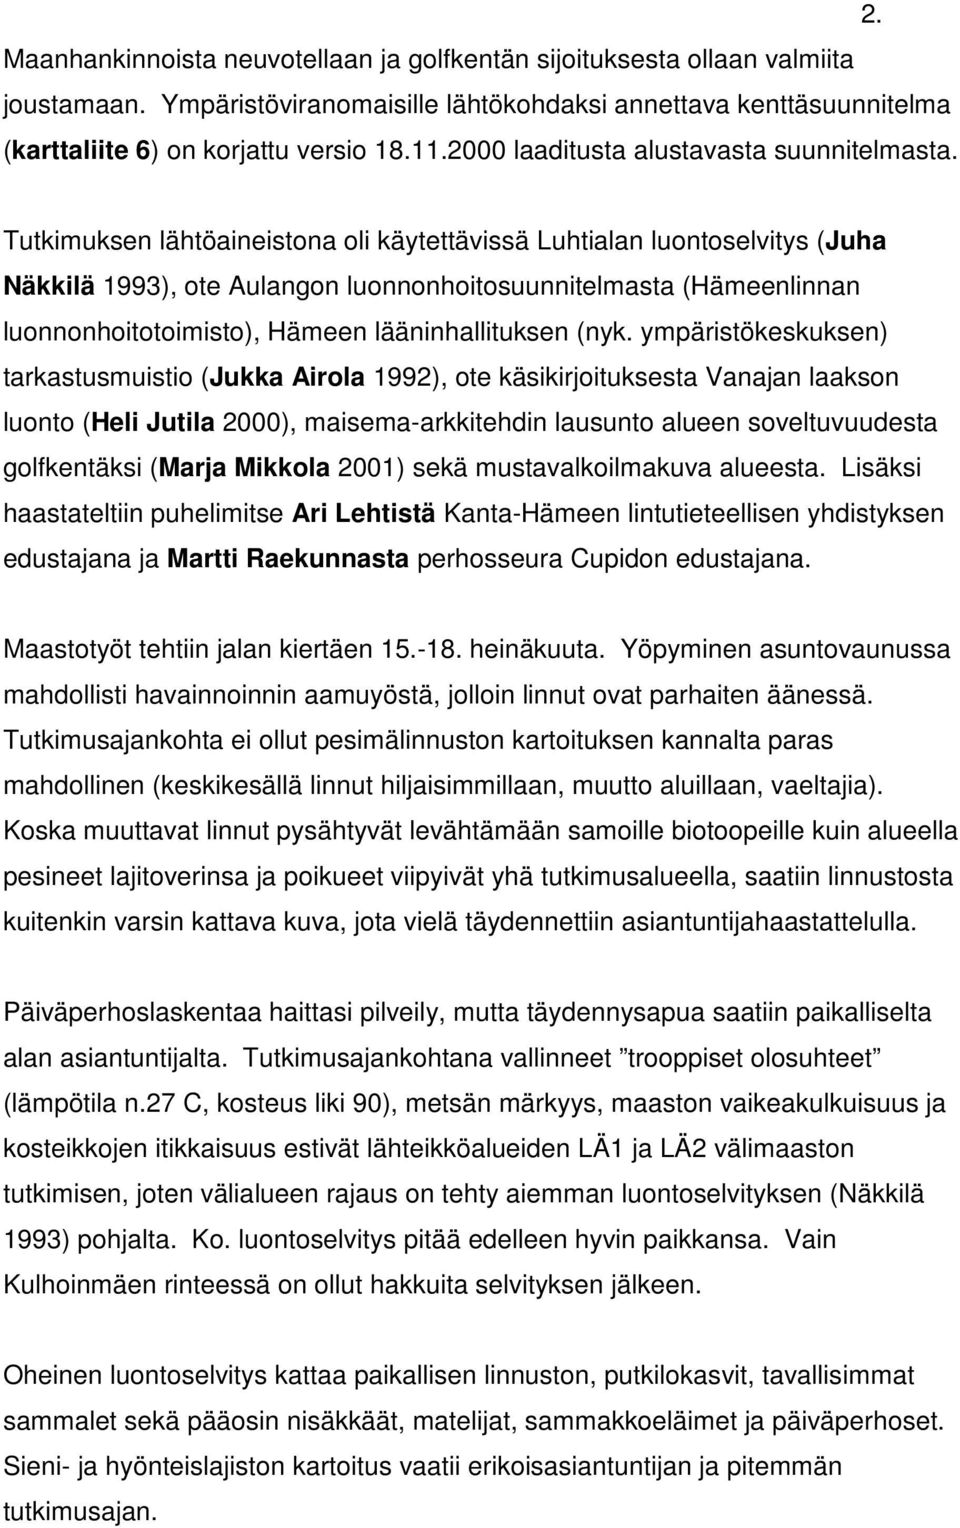 Tutkimuksen lähtöaineistona oli käytettävissä Luhtialan luontoselvitys (Juha Näkkilä 1993), ote Aulangon luonnonhoitosuunnitelmasta (Hämeenlinnan luonnonhoitotoimisto), Hämeen lääninhallituksen (nyk.